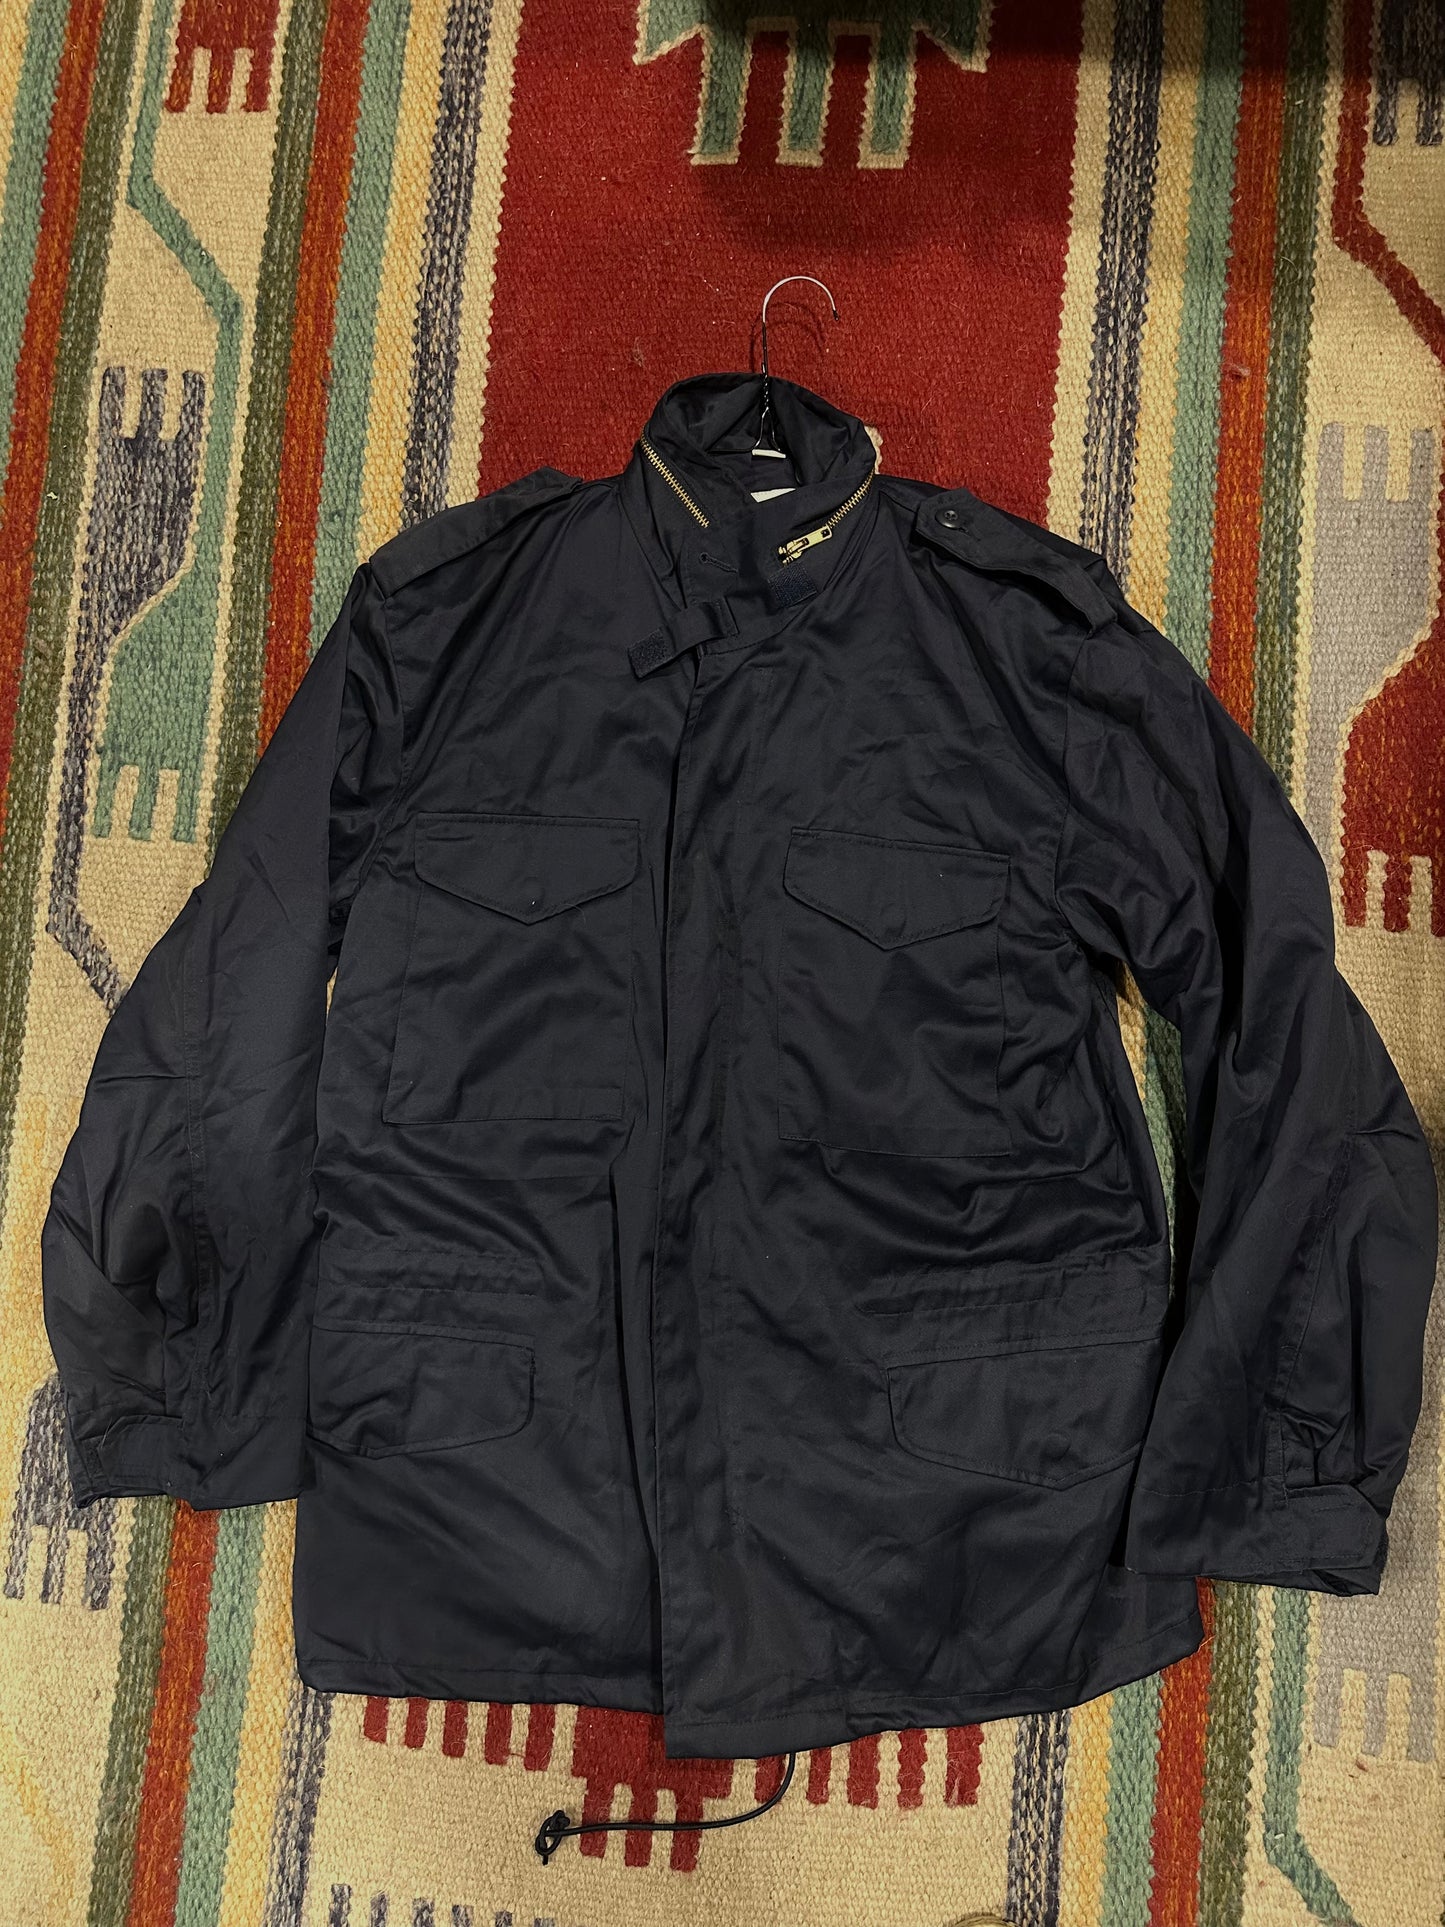 Field jacket tg.48/50